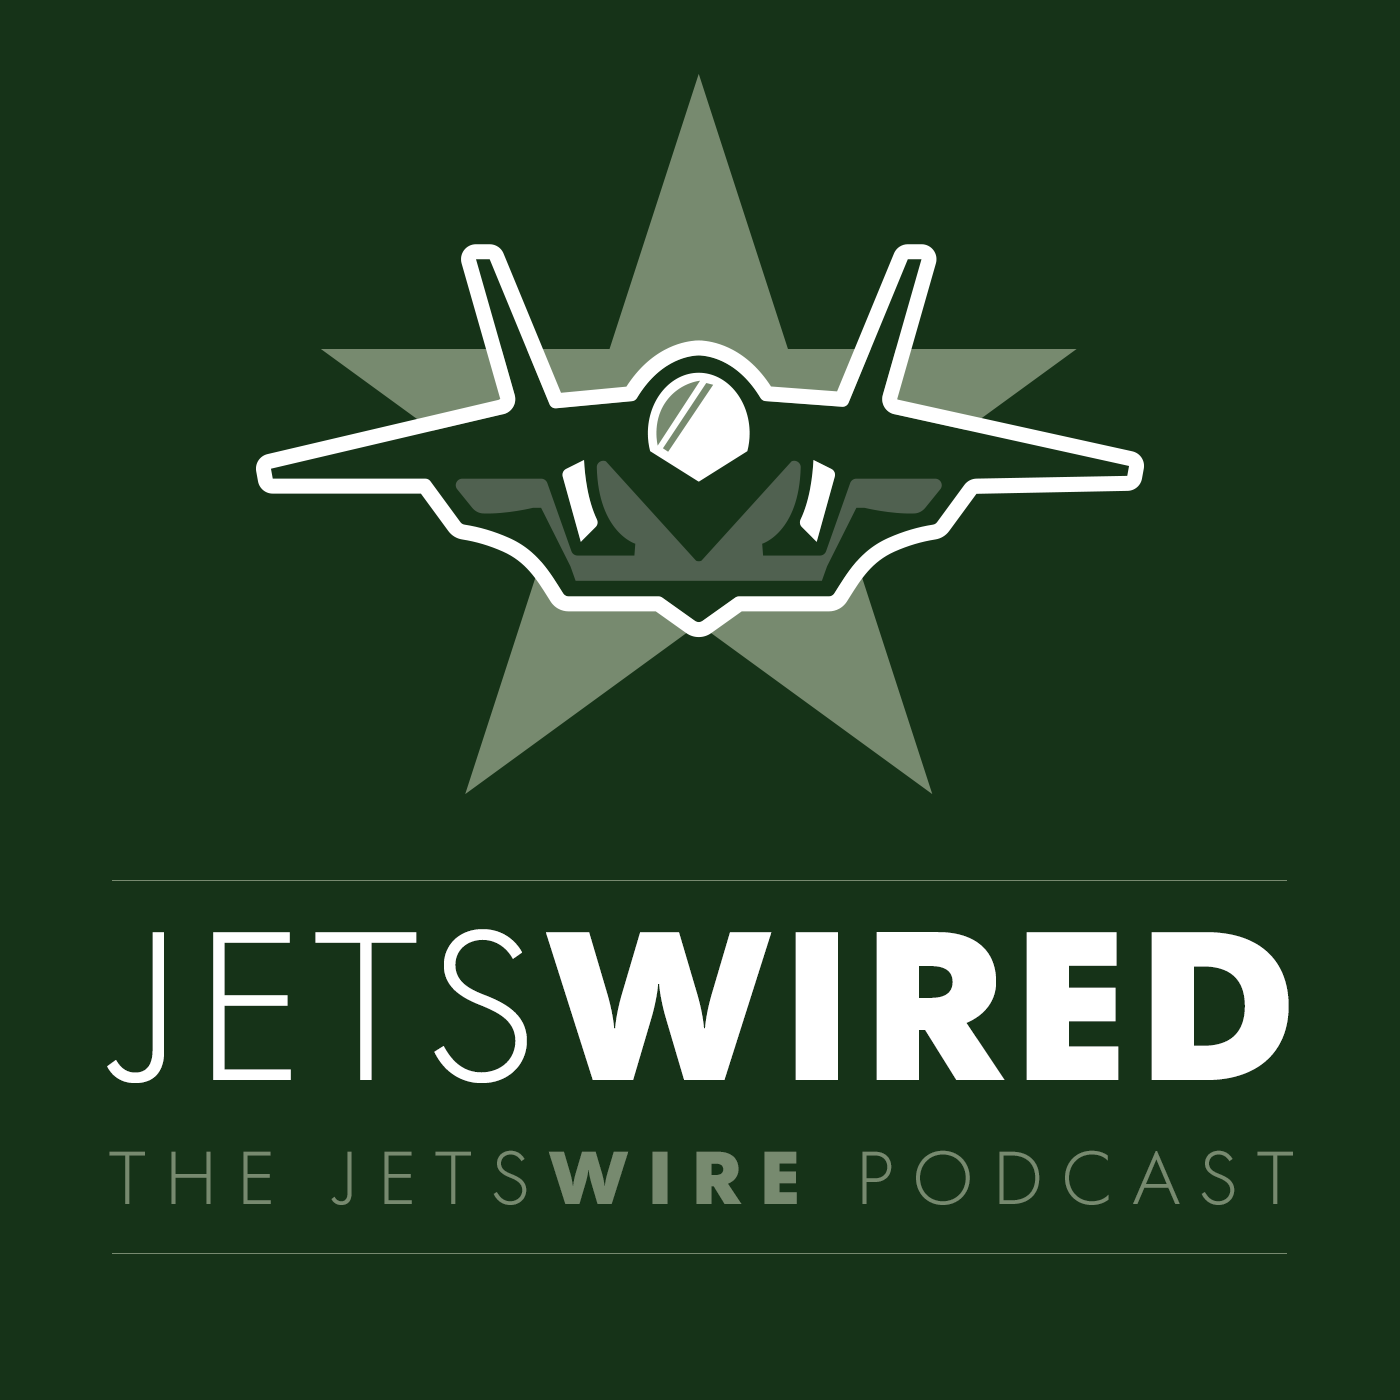 ny jets wire